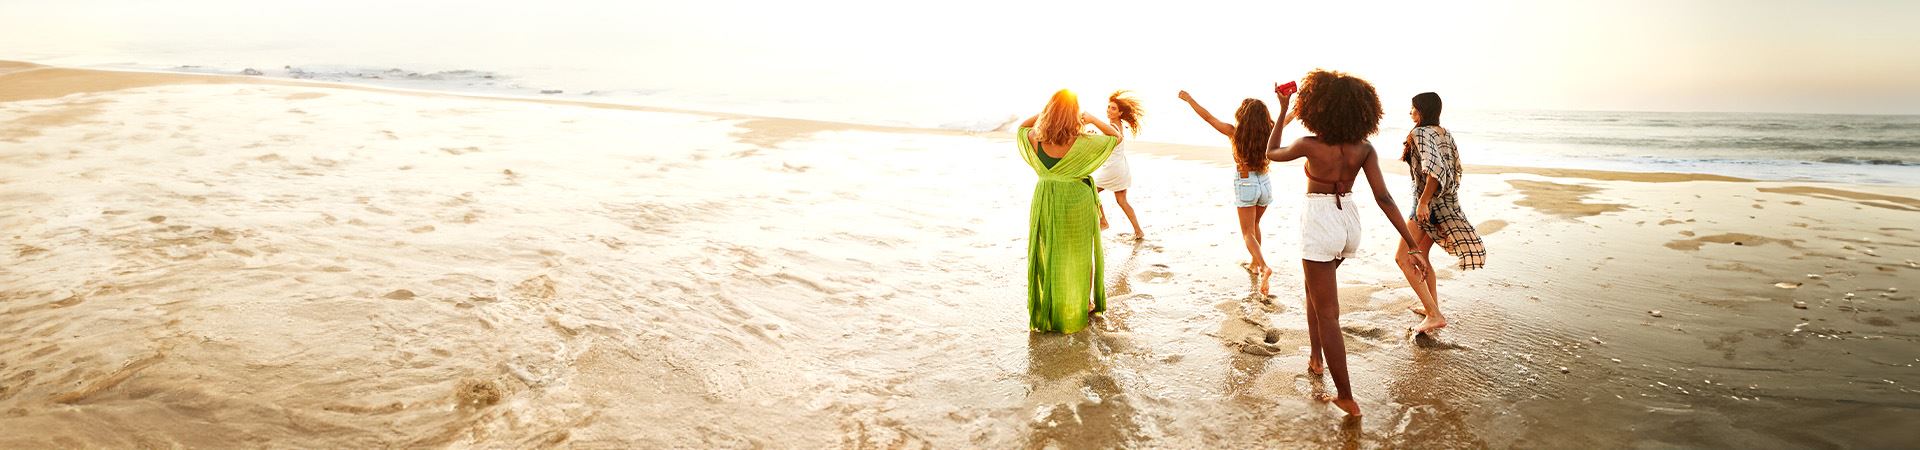 Esta imagen muestra a cinco chicas junto al mar. Una de ellas tiene los brazos en alto y la otra está corriendo. Todas llevan ropa ligera de verano. Al fondo se ve el mar y la luz indica que es el atardecer.